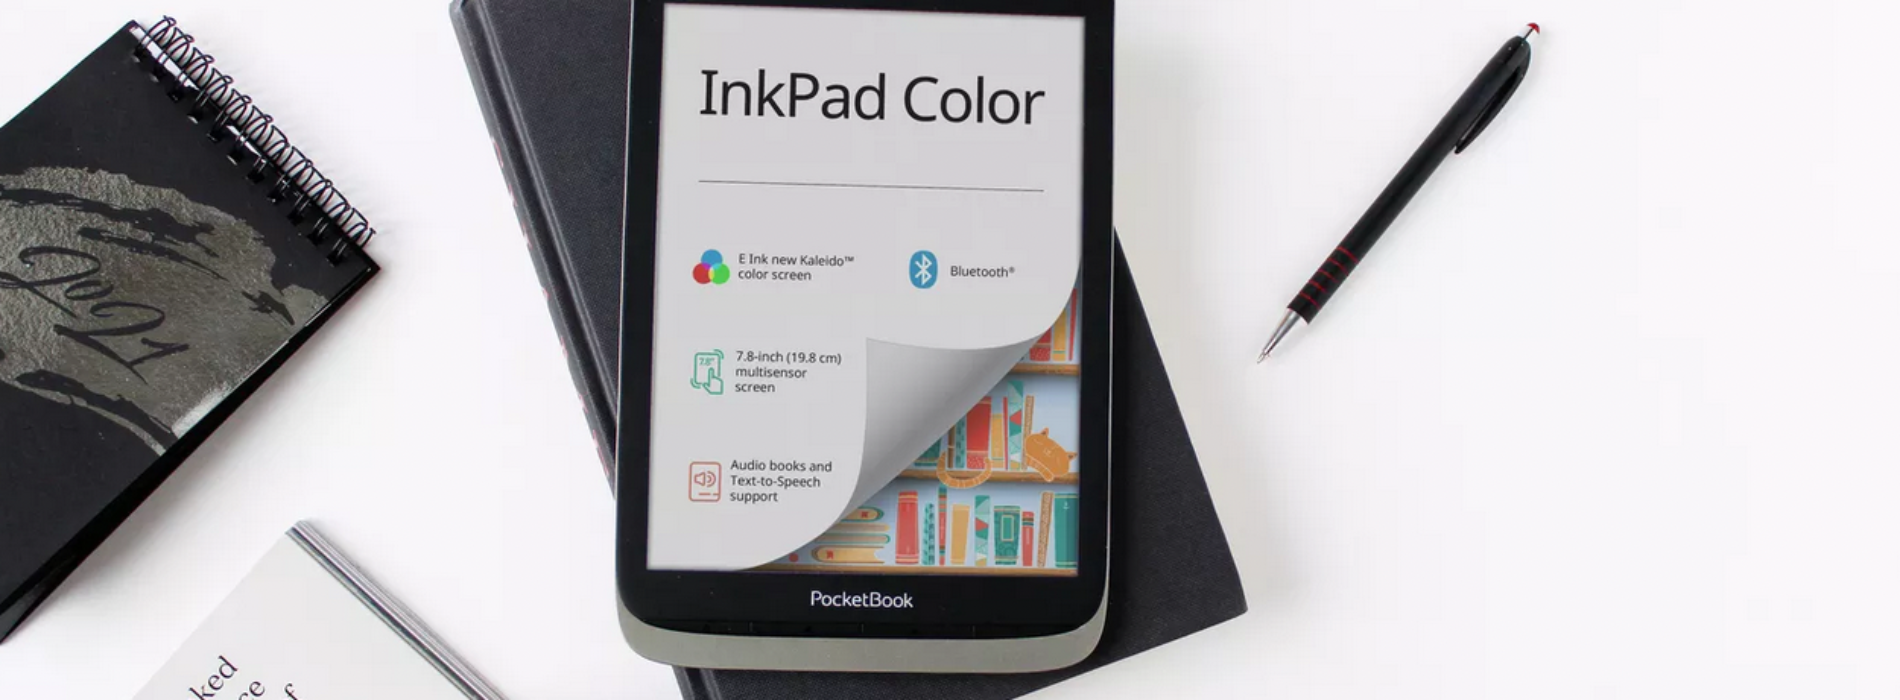 Pocketbook Inkpad Color – zkušenosti s první evropskou čtečkou s barevným displejem new Kaleido